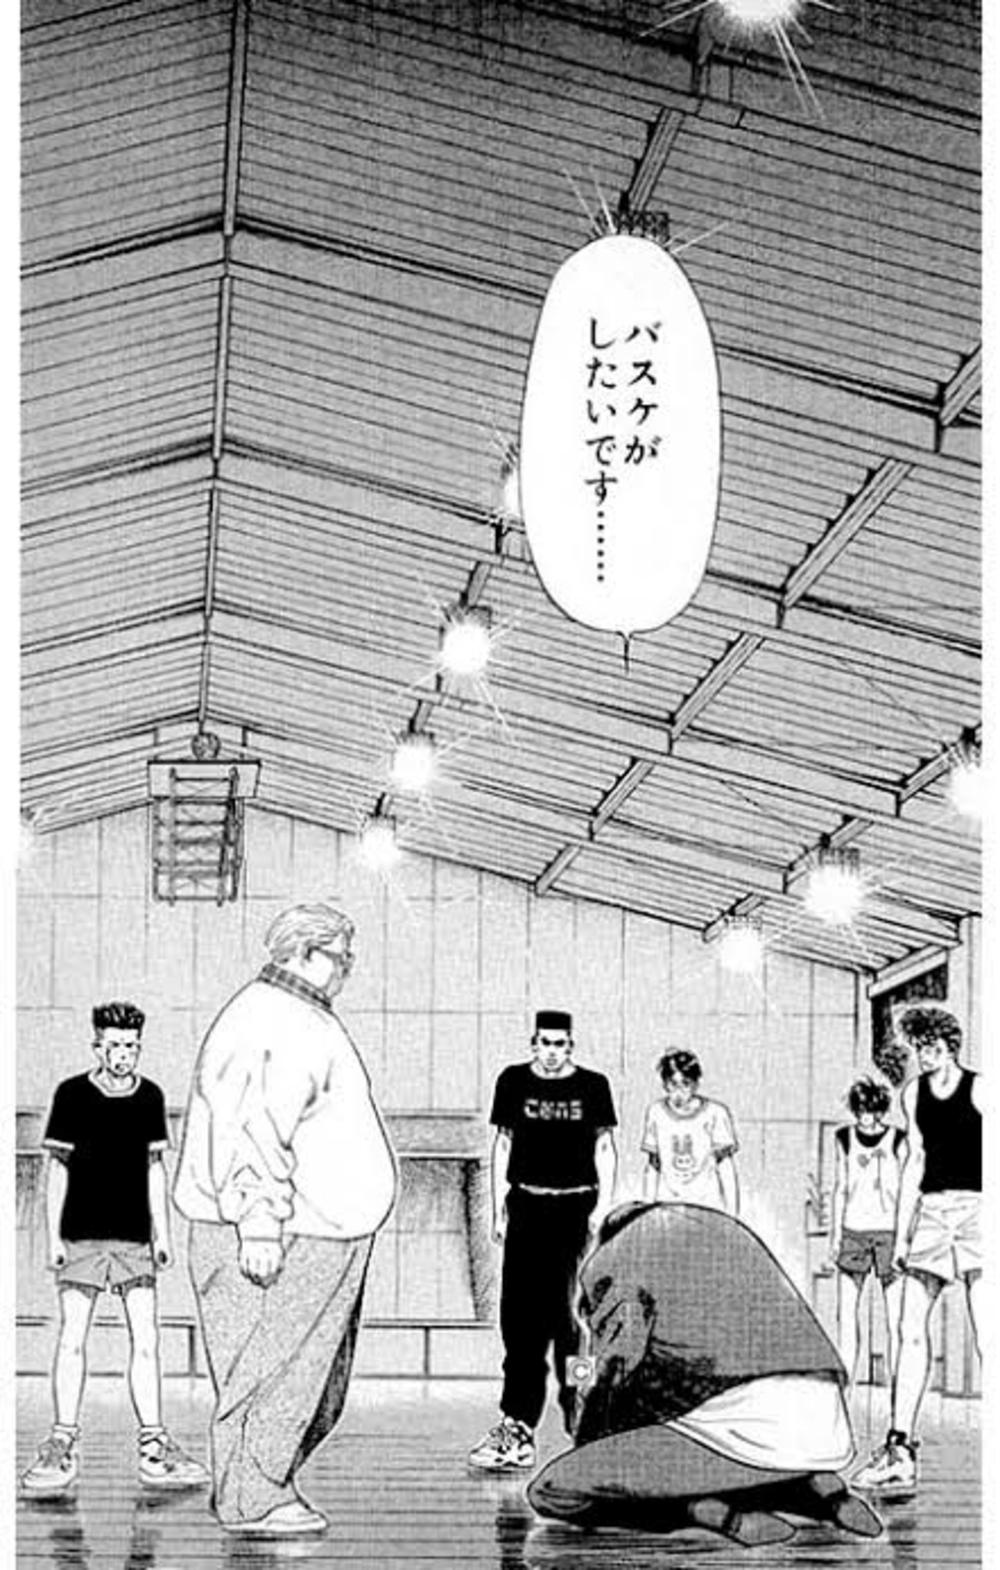 兵庫県 バスケットボールサークル バスケしたい 兵庫県で バスケットボールの活動中メンバー募集中 バスケットボール 掲載サークル数日本一 サークルメンバー募集中 社会人の為のサークル活動支援プラットフォーム つなげーと